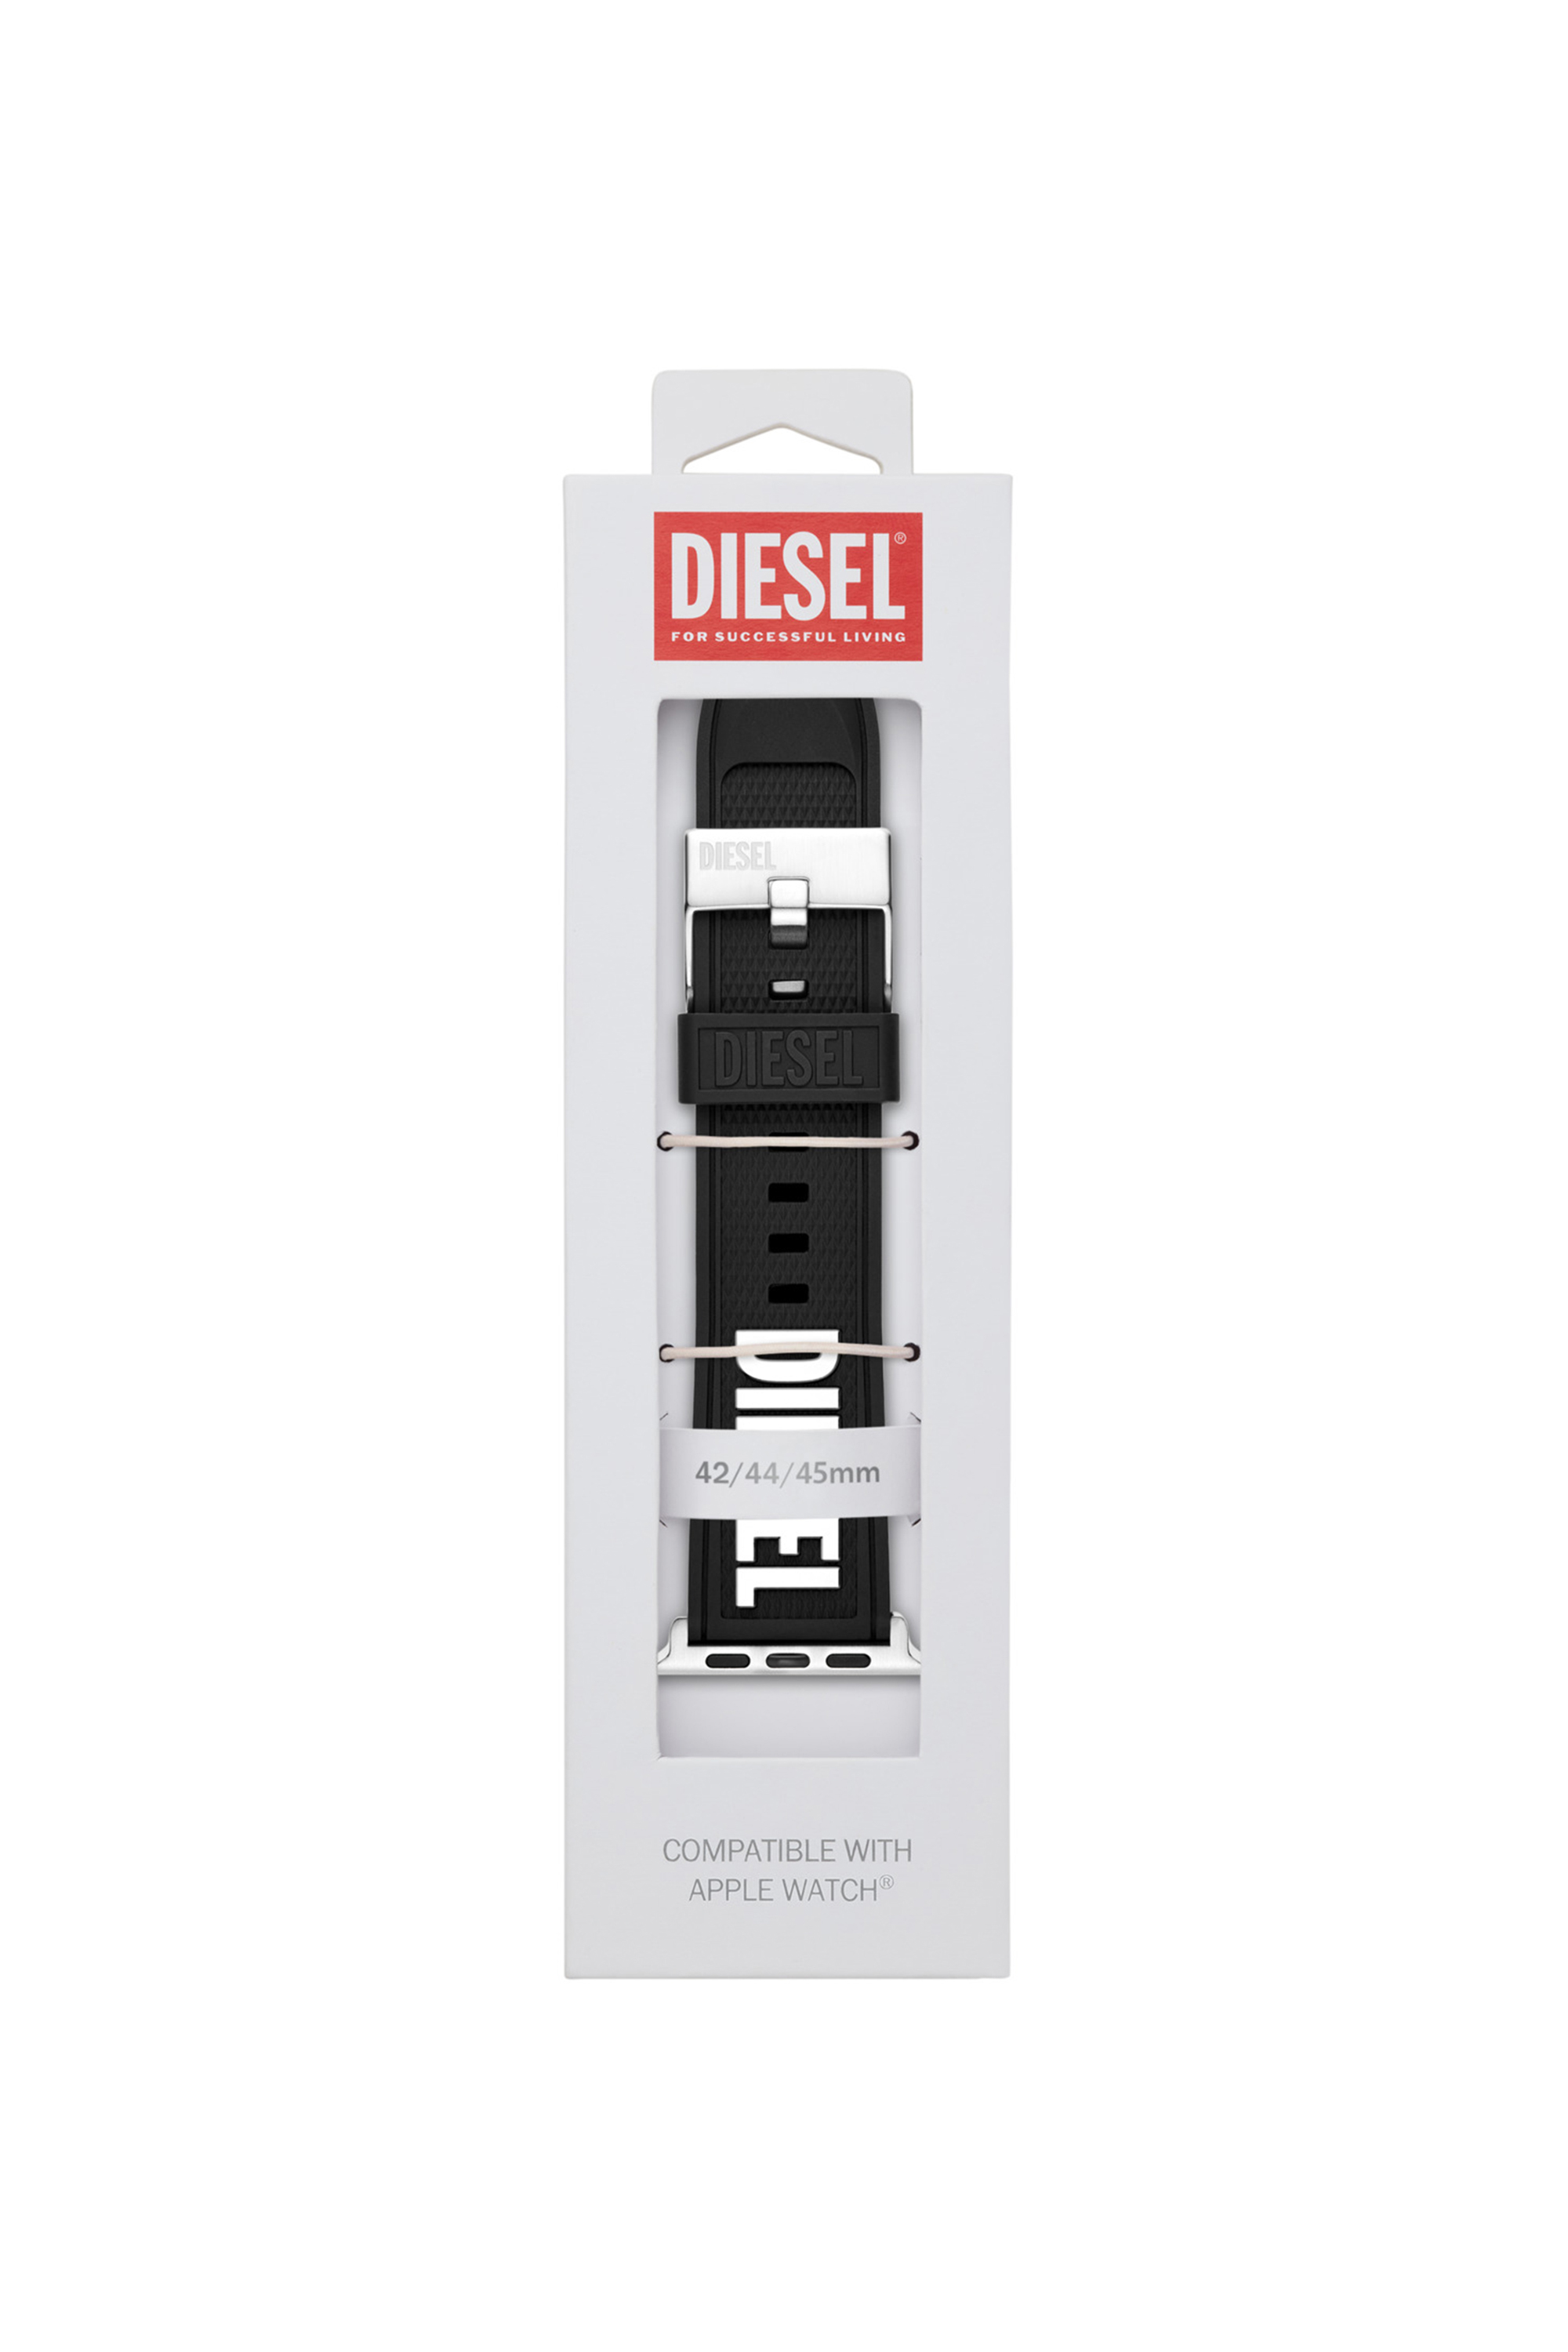 Diesel - DSS011, Negro - Image 2